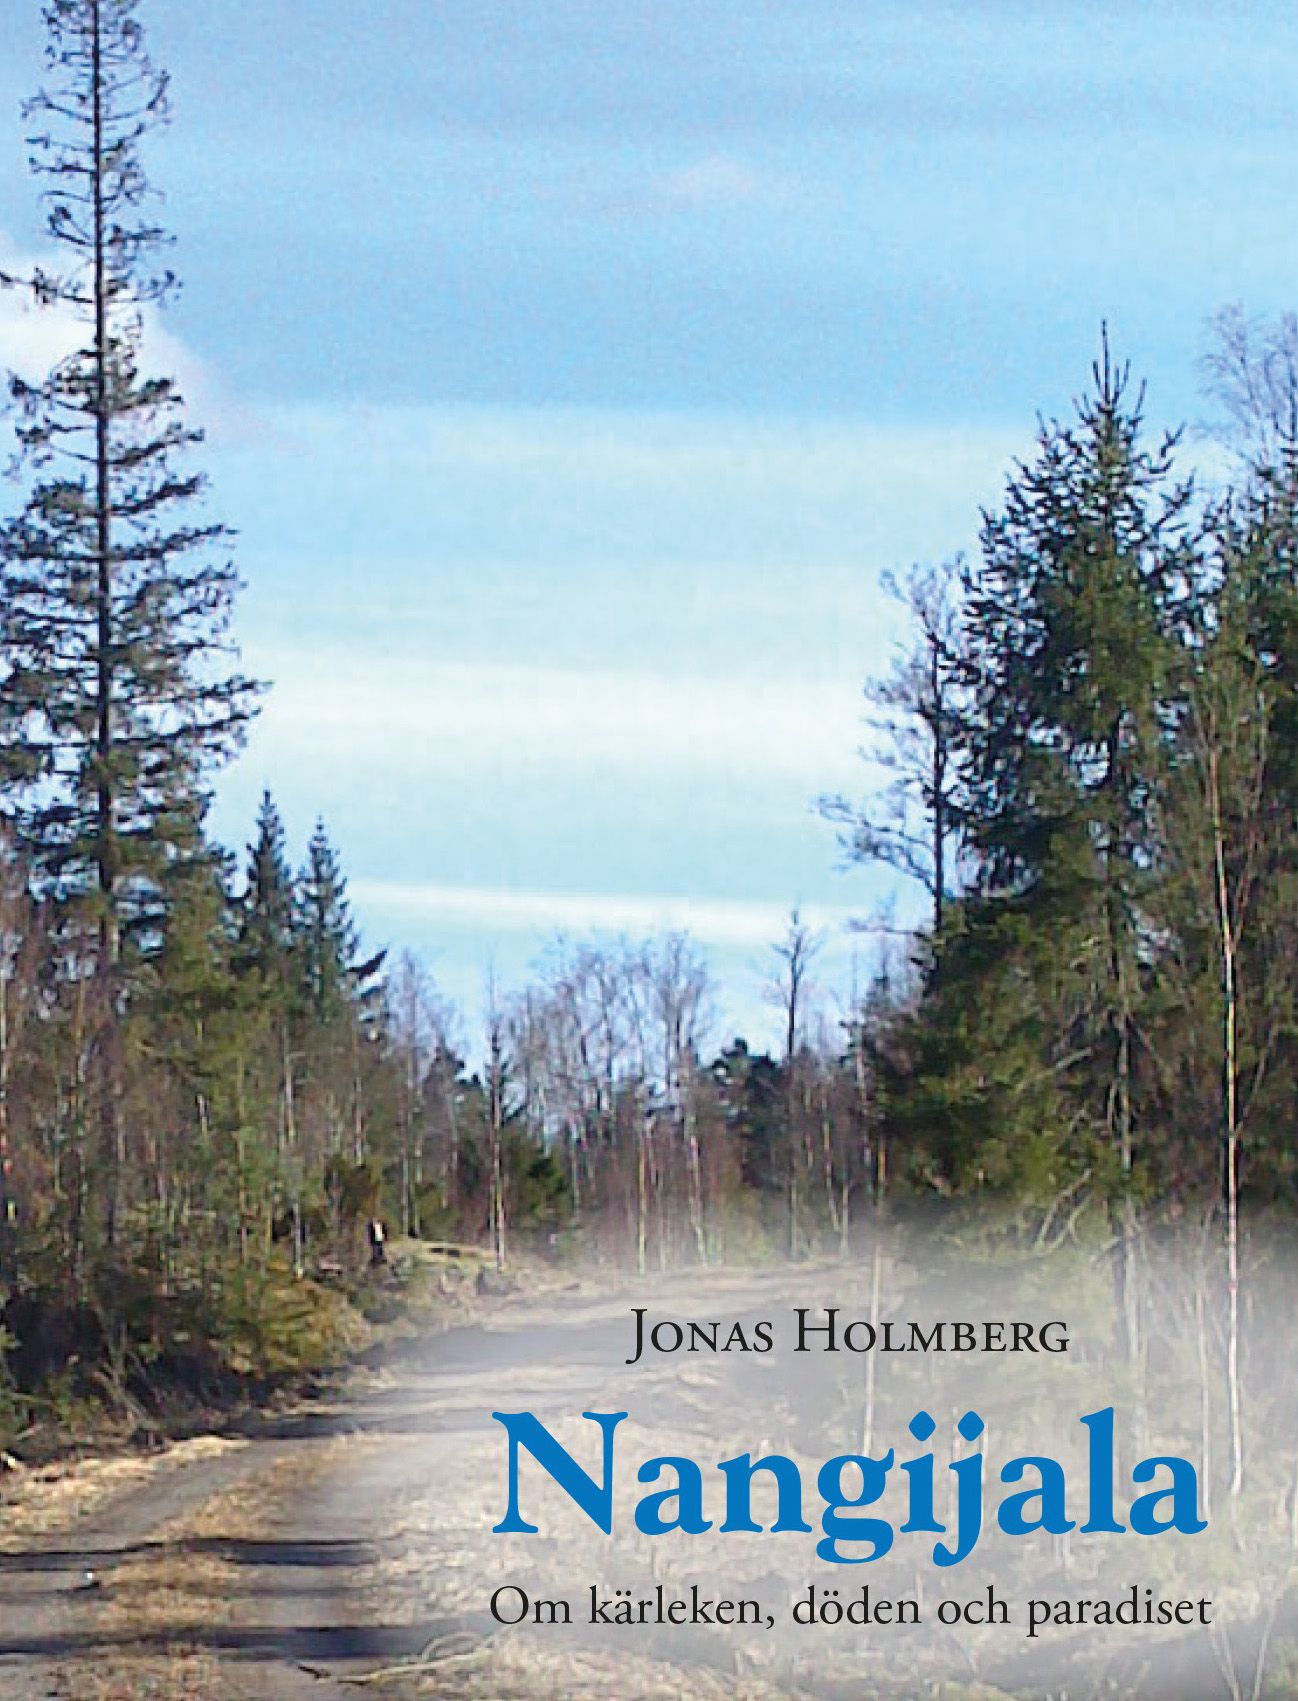 Nangijala - Om kärleken, döden och paradiset, eBook by Jonas Holmberg